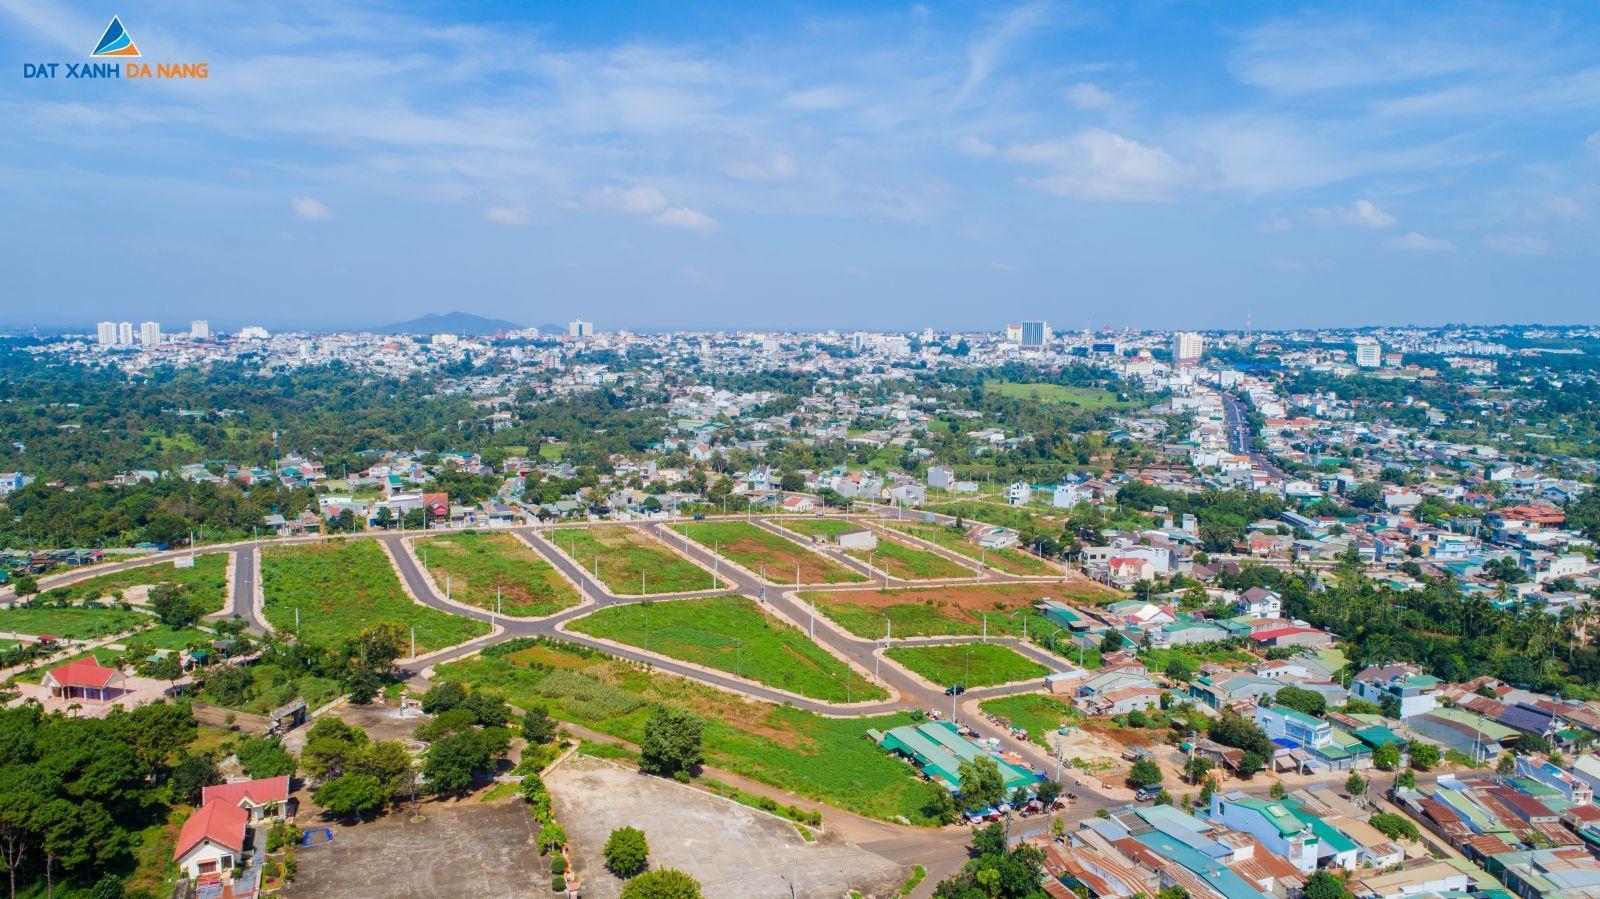 [GÓC CẬP NHẬT] DỰ ÁN KHU DÂN CƯ TÂN LẬP THÁNG 10.2019 - Viet Nam Smart City